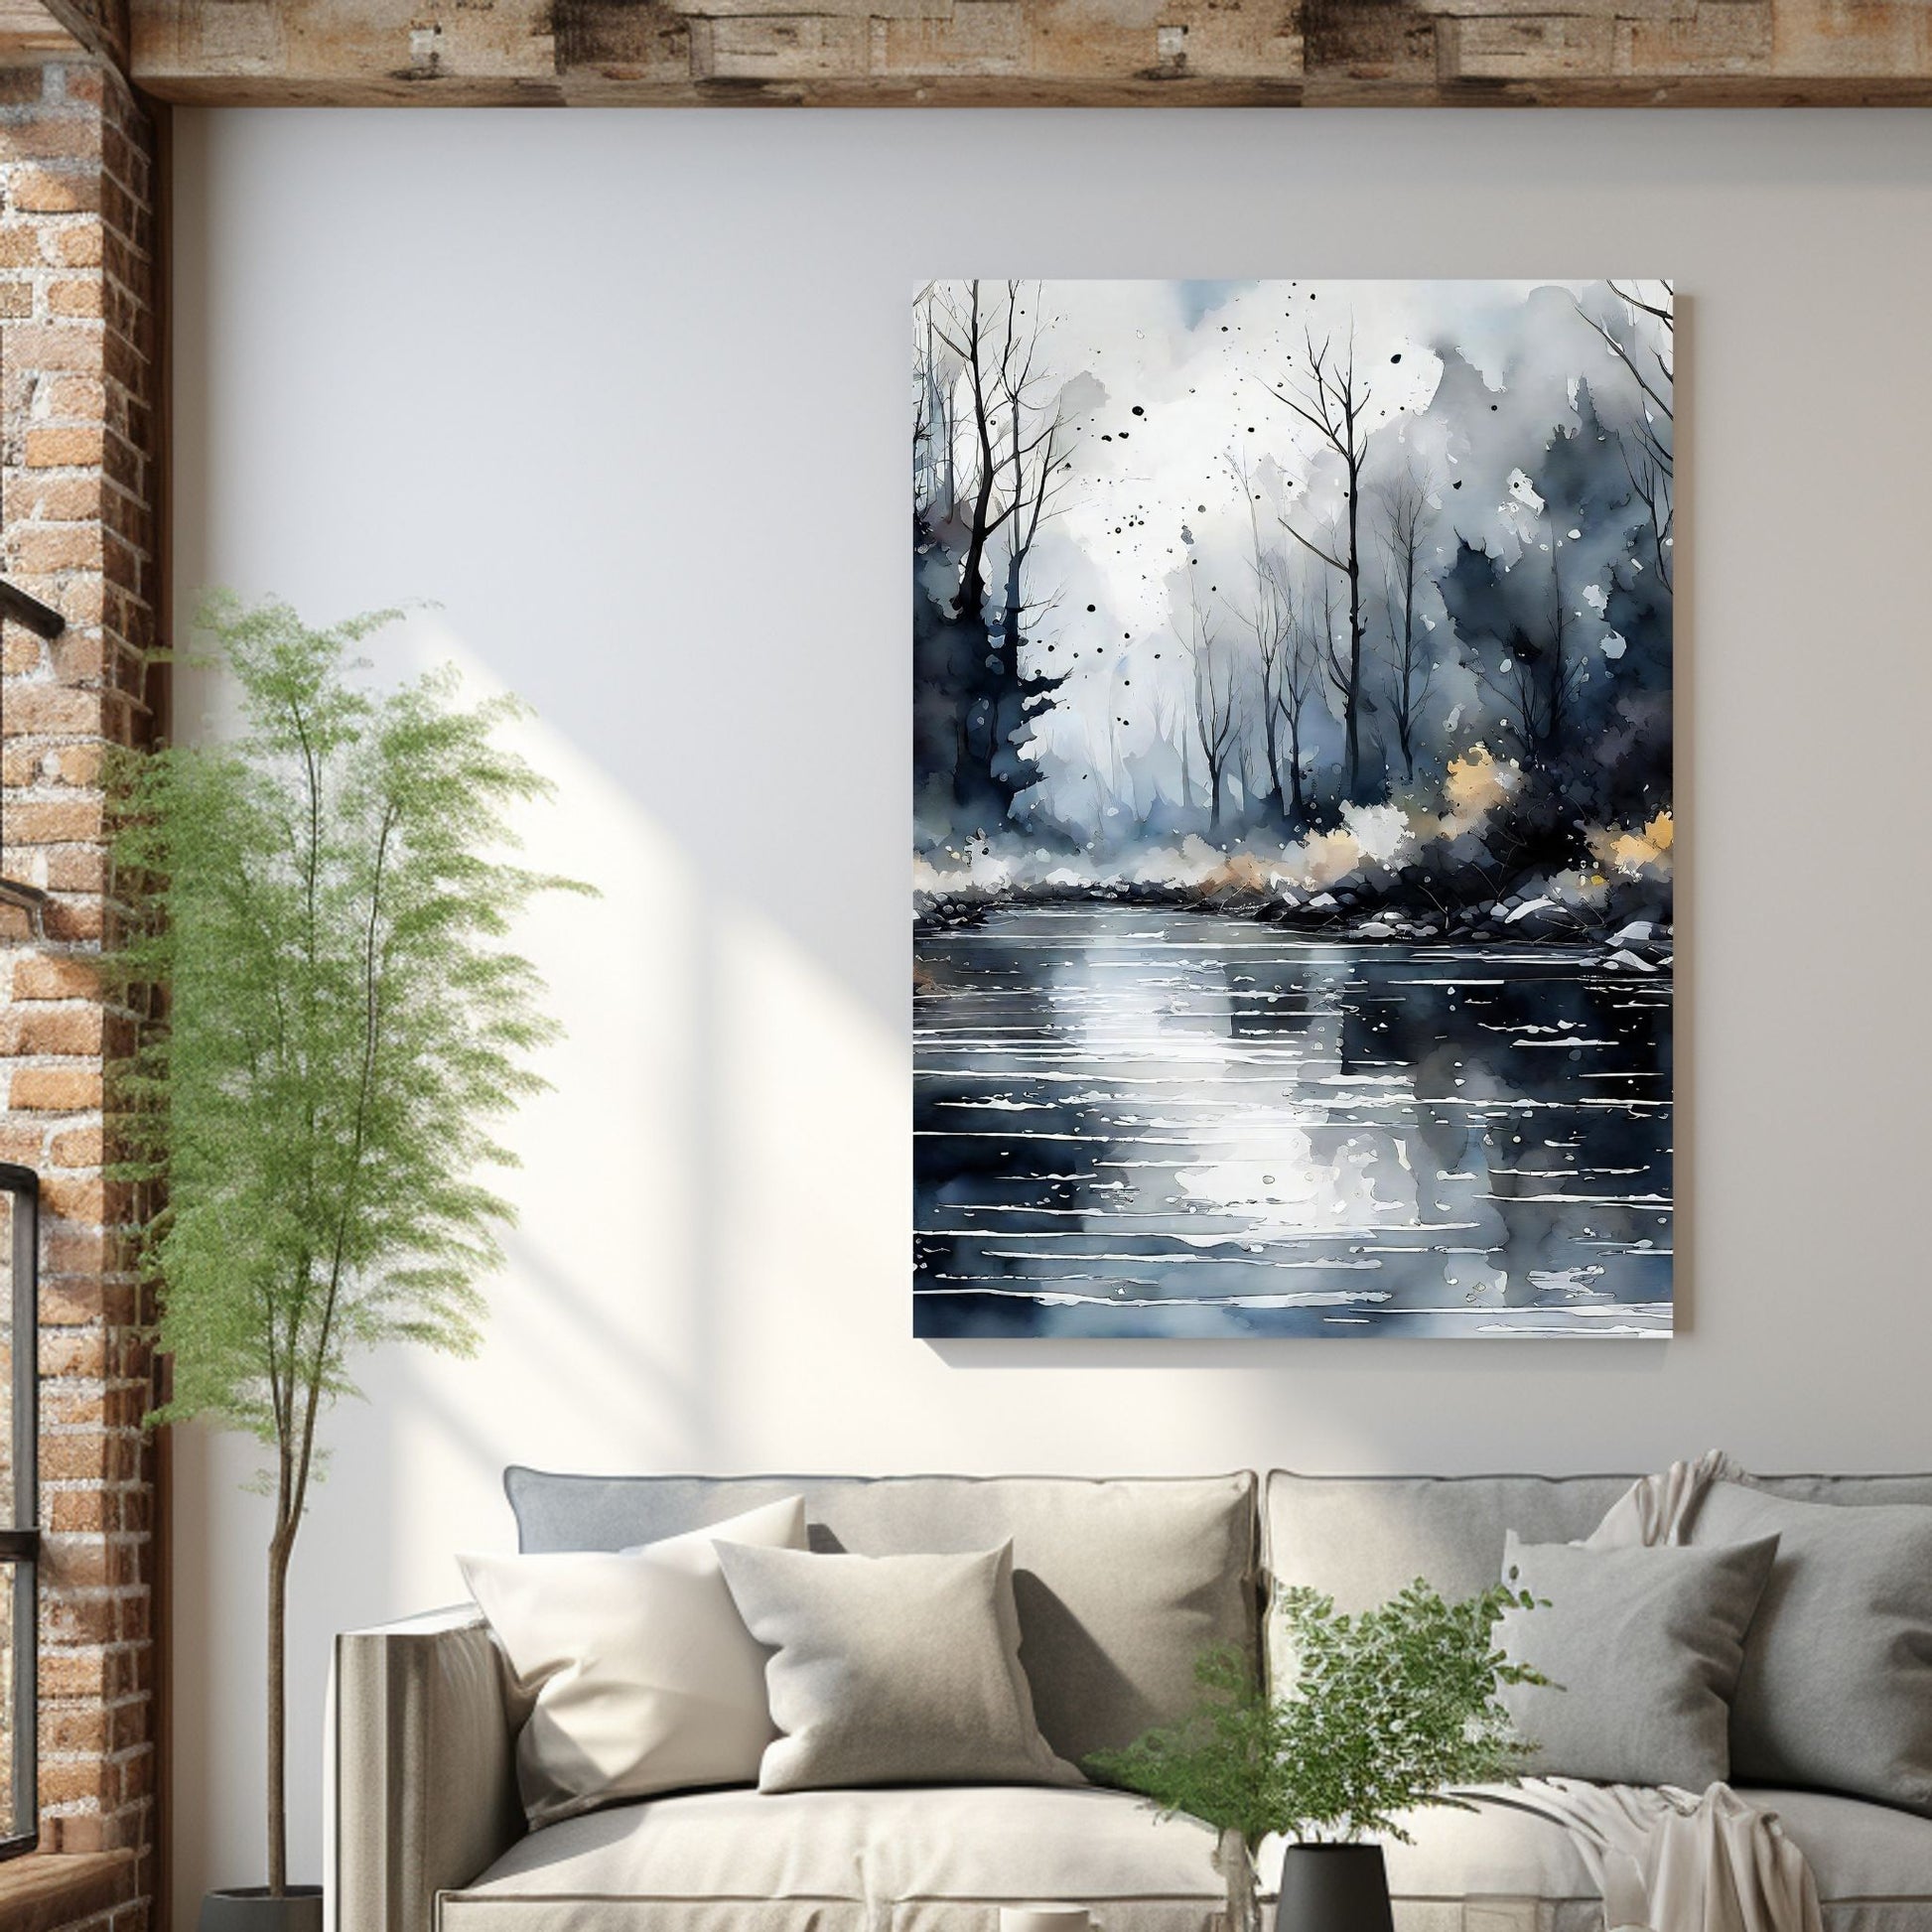 Digitalt kunstmaleri i akvarell som fanger essensen av en magisk høstdag, med et blendende landskap av skiftende løvverk, og en sakteflytende elv. Illustrasjonsfoto viser motivet på lerret som henger over en sofa.